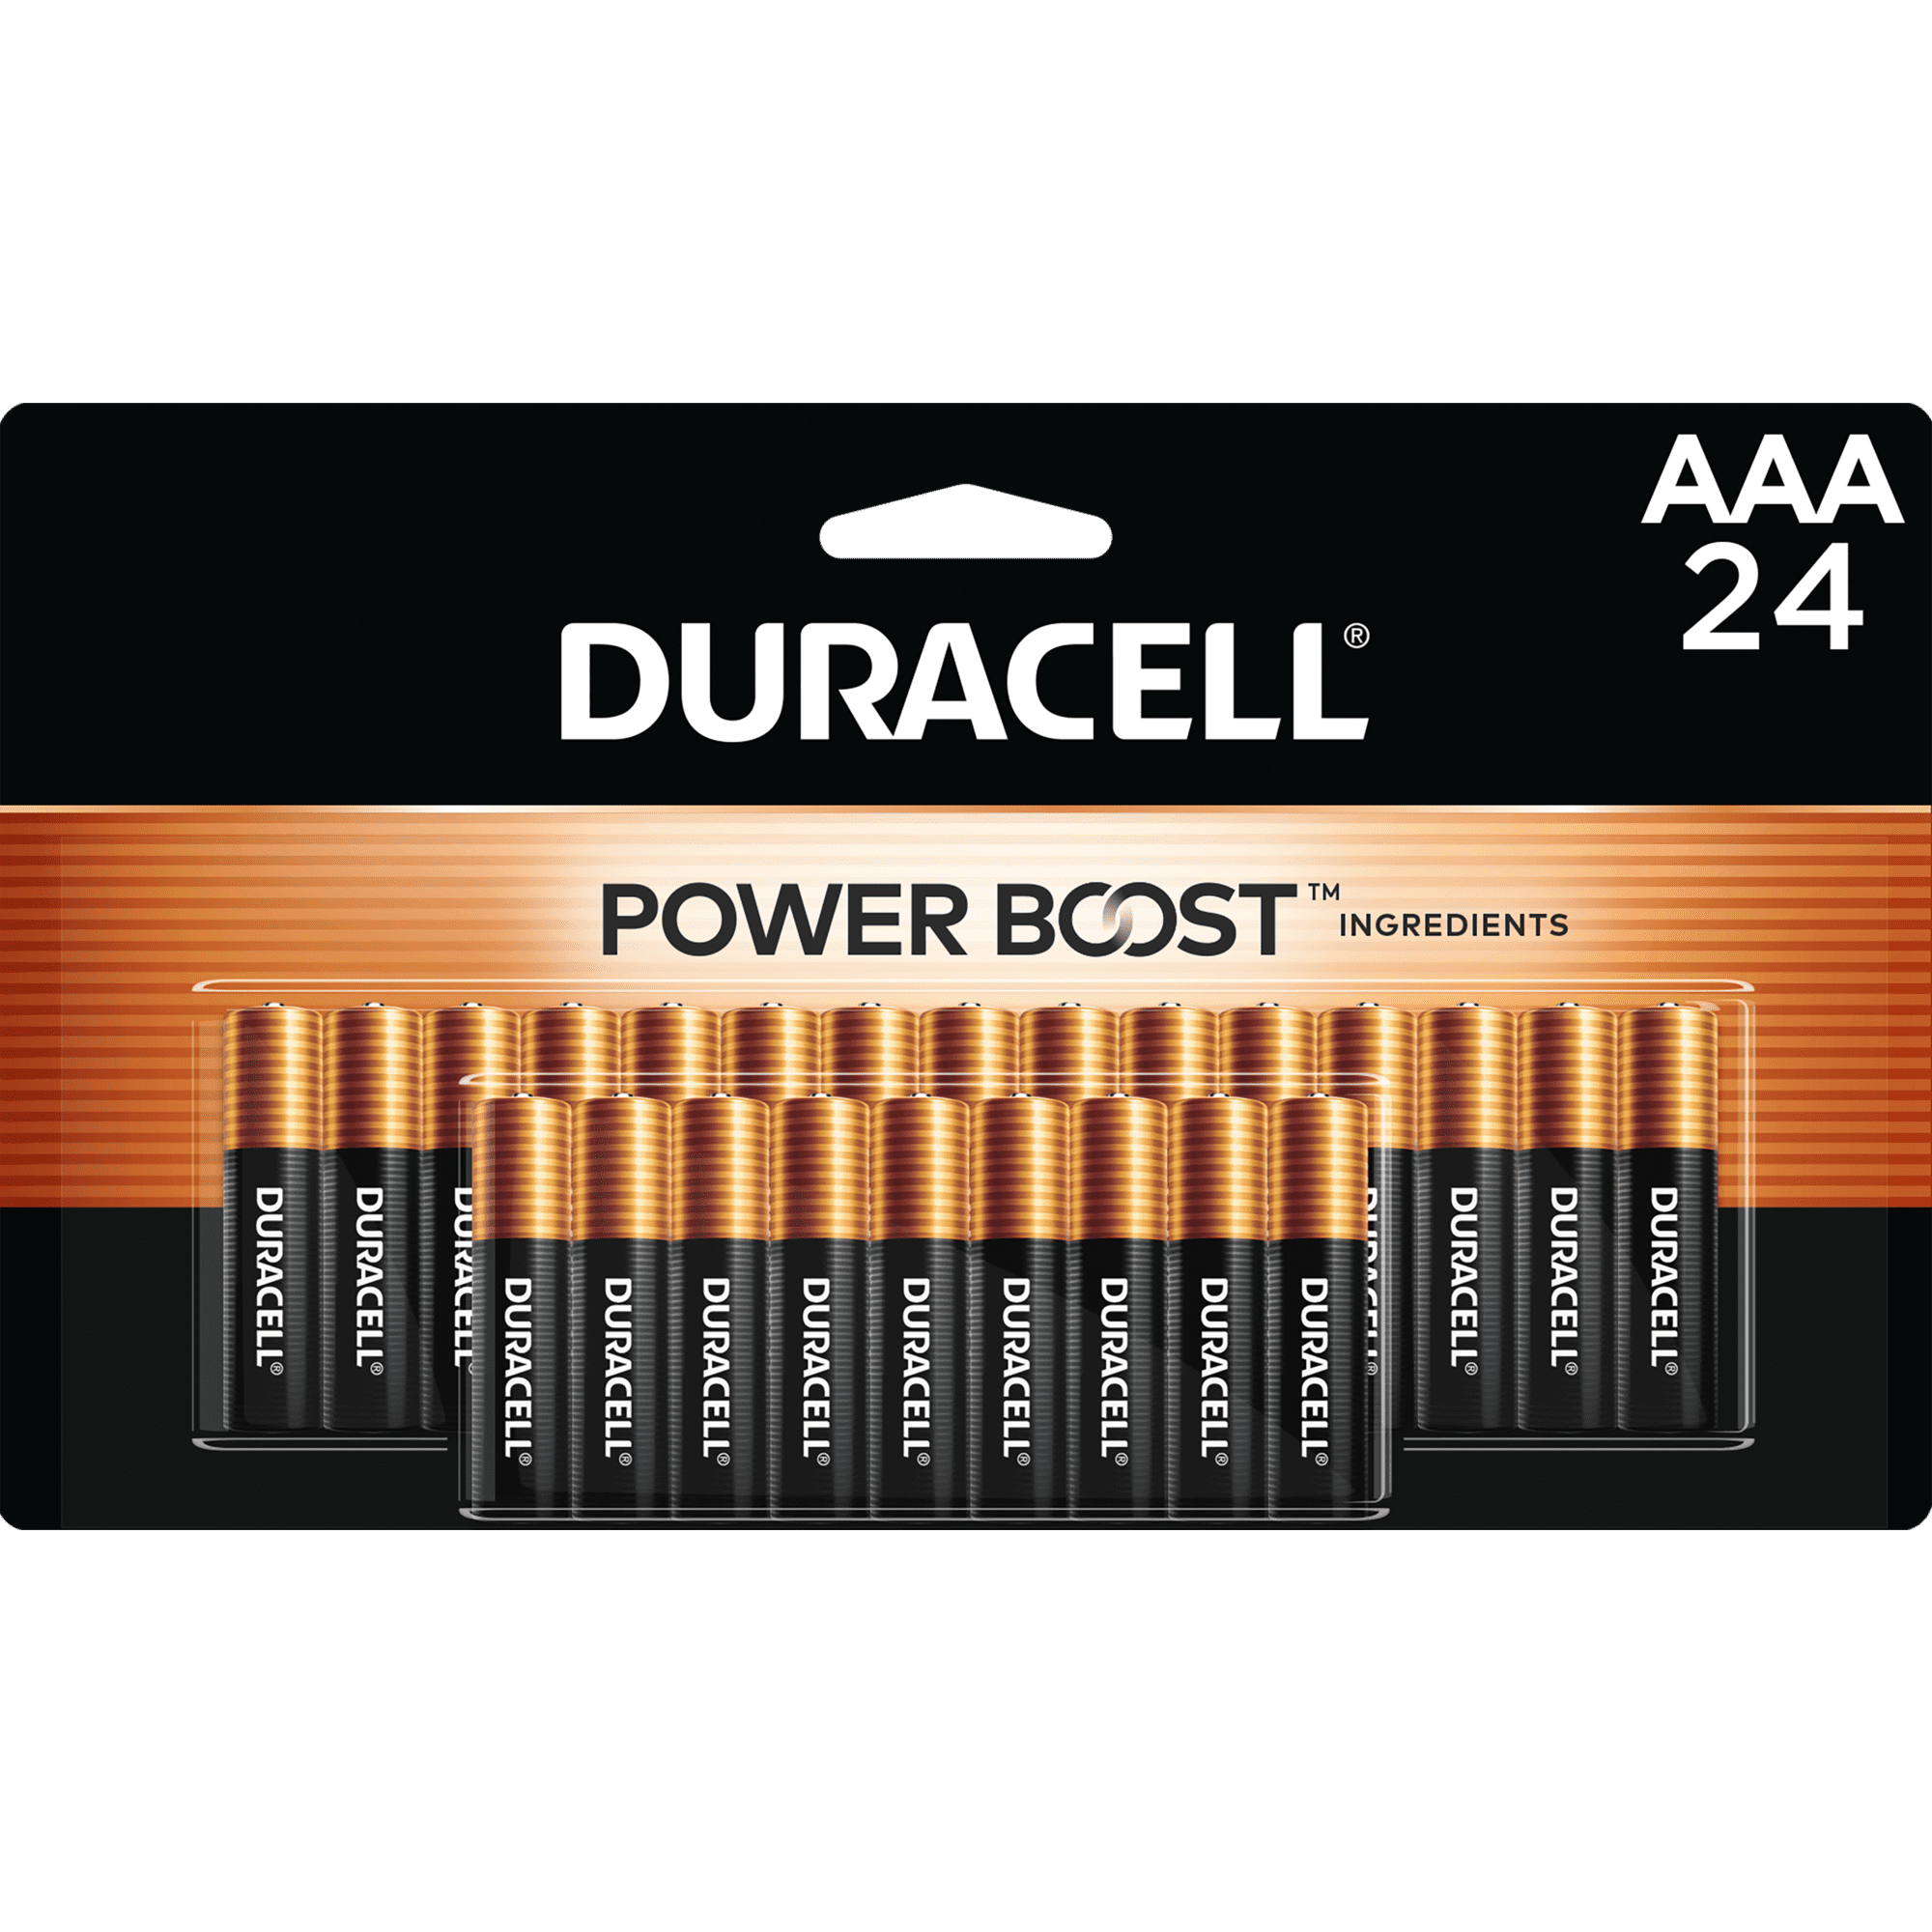 Duracell Coppertop - Pilas AAA con ingredientes Power Boost, paquete de 24  baterías triple A con energía de larga duración, batería alcalina AAA para